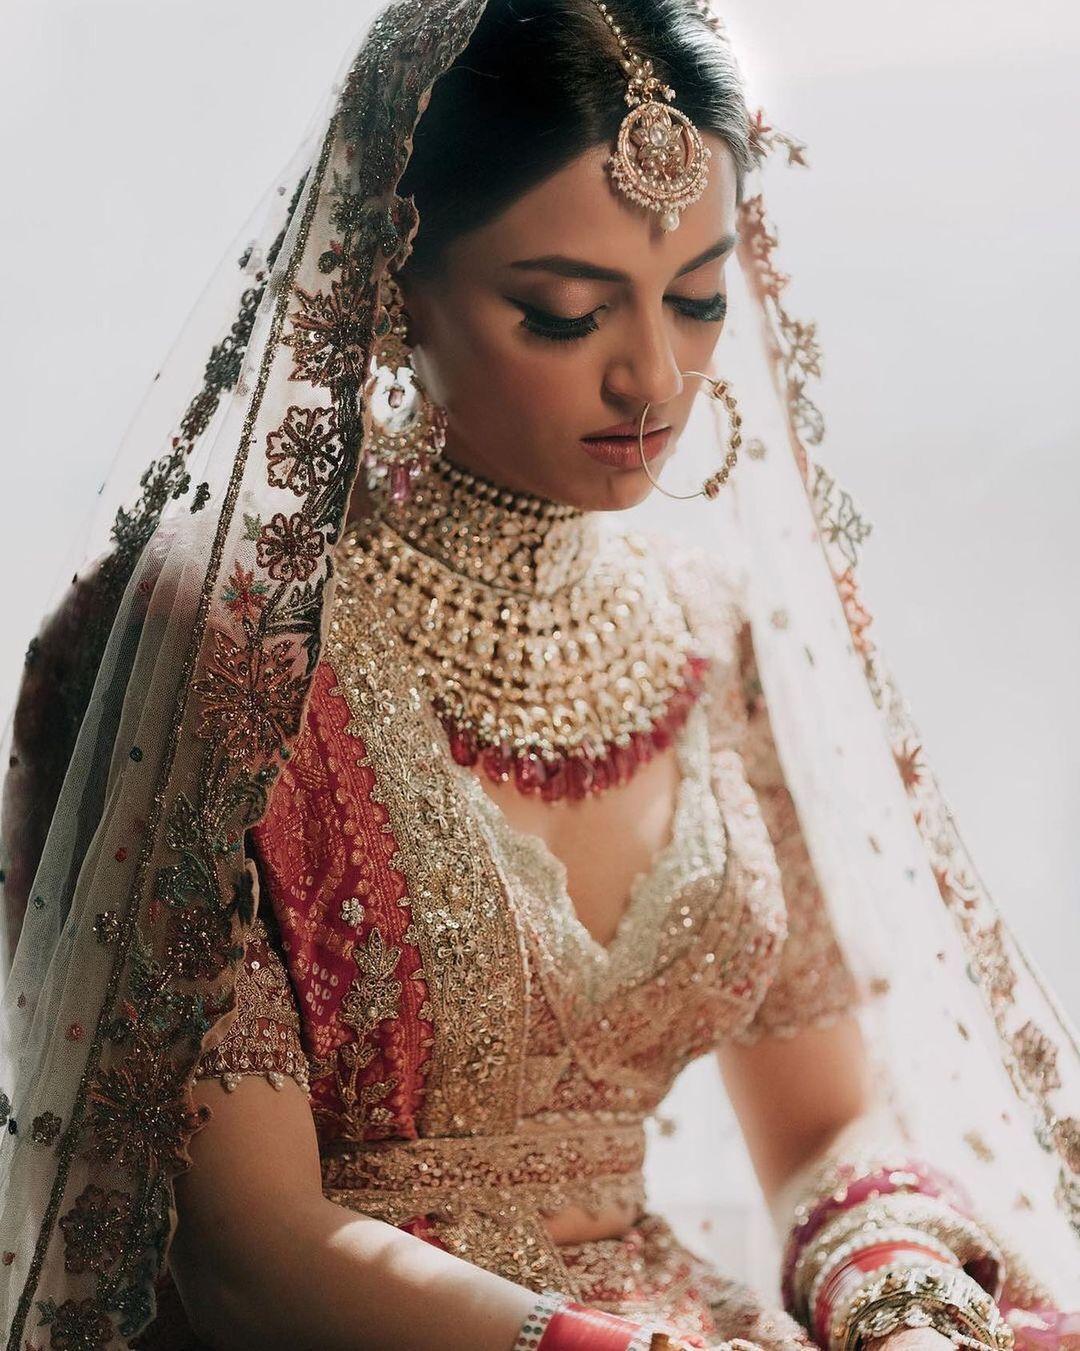 gown#indianbride#instabridal#weddinghair#weddingmakeup#weddingparty |  Indian bride photography poses, Indian wedding poses, Indian bride poses